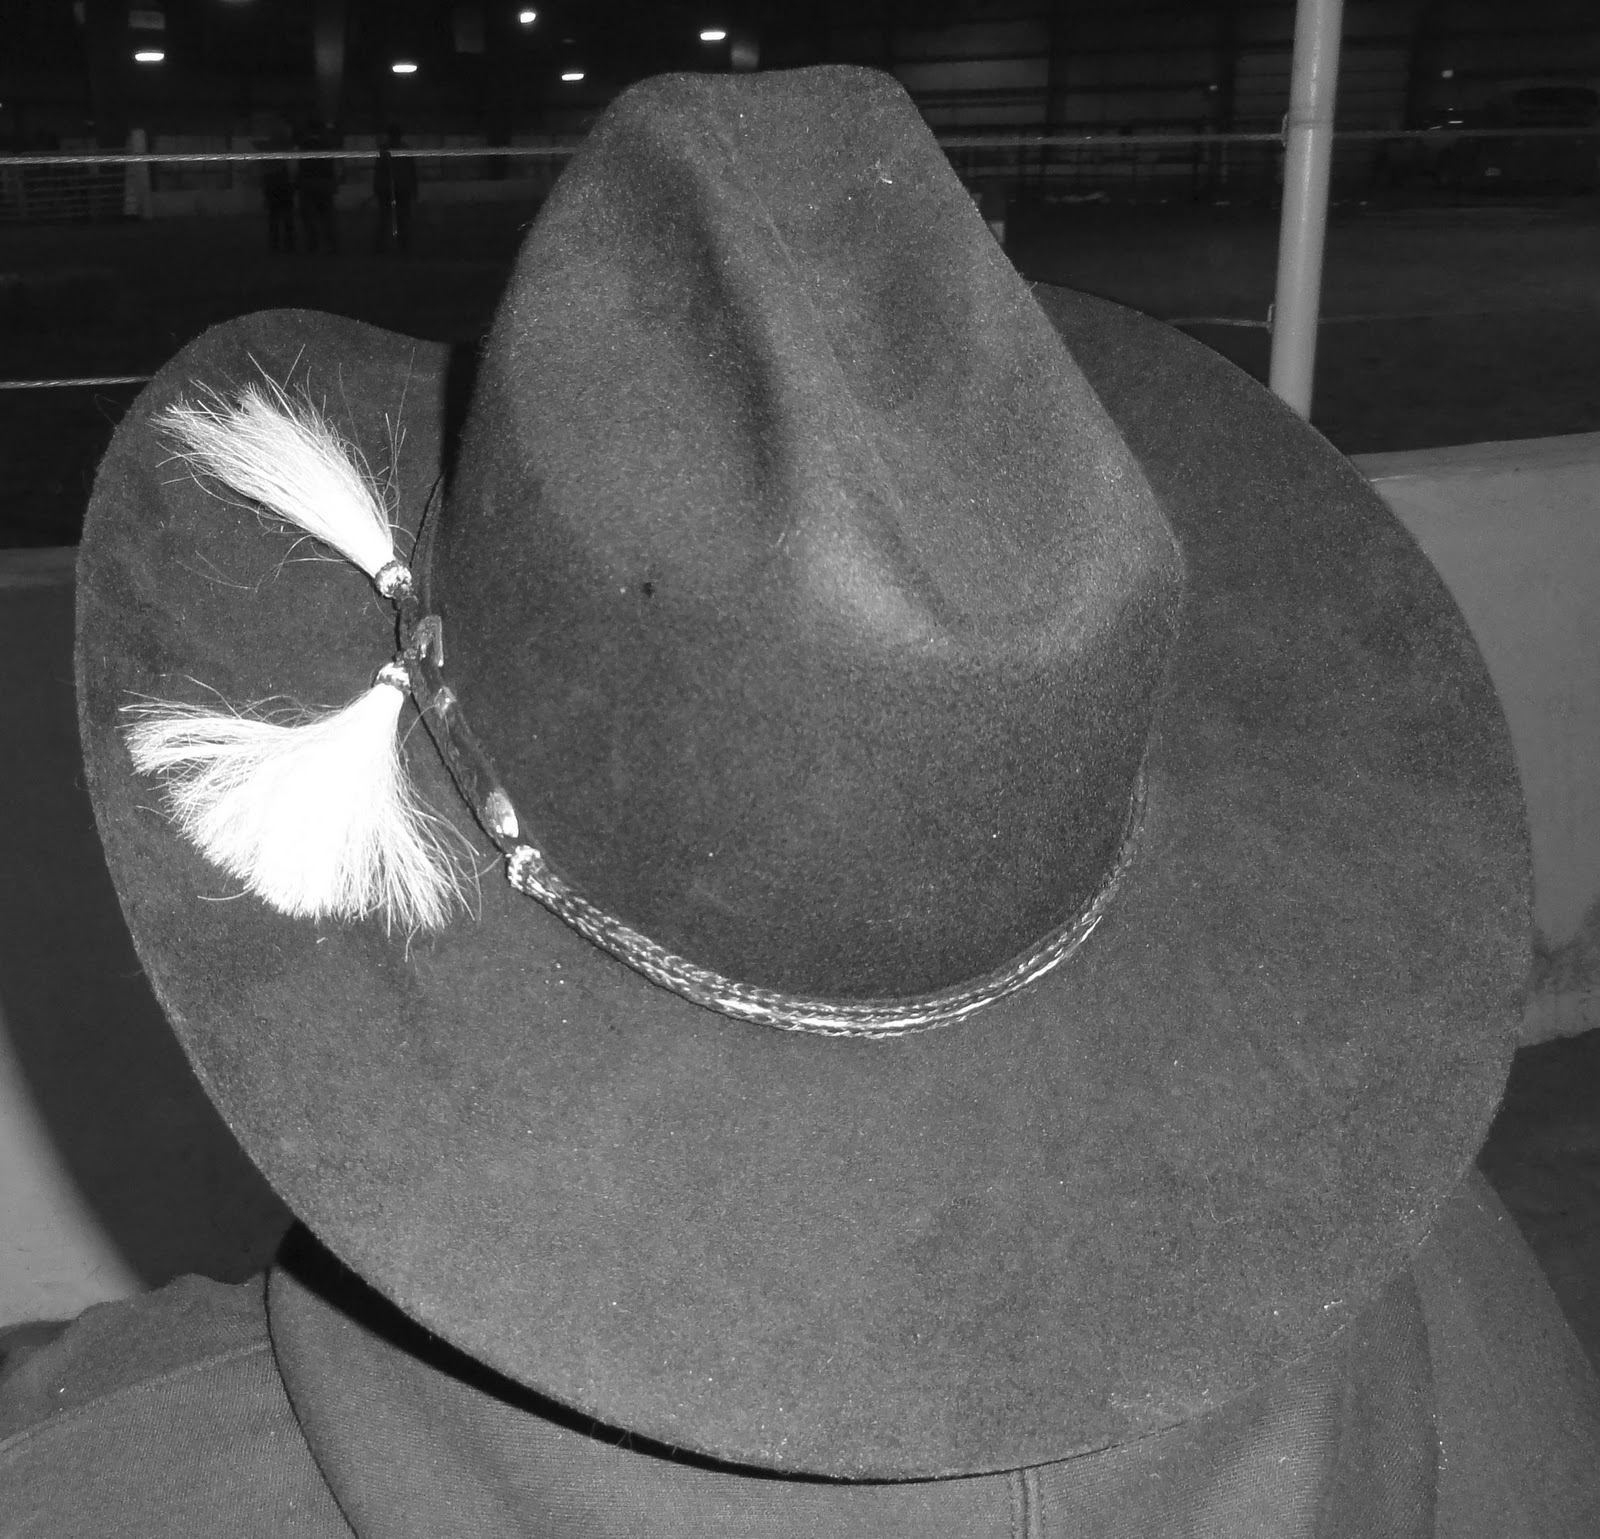 http://4.bp.blogspot.com/_m8nI4_uDXW0/TUsAiOYROGI/AAAAAAAAGEM/OMtAux_cY7M/s1600/Cowboy+Hat.jpg